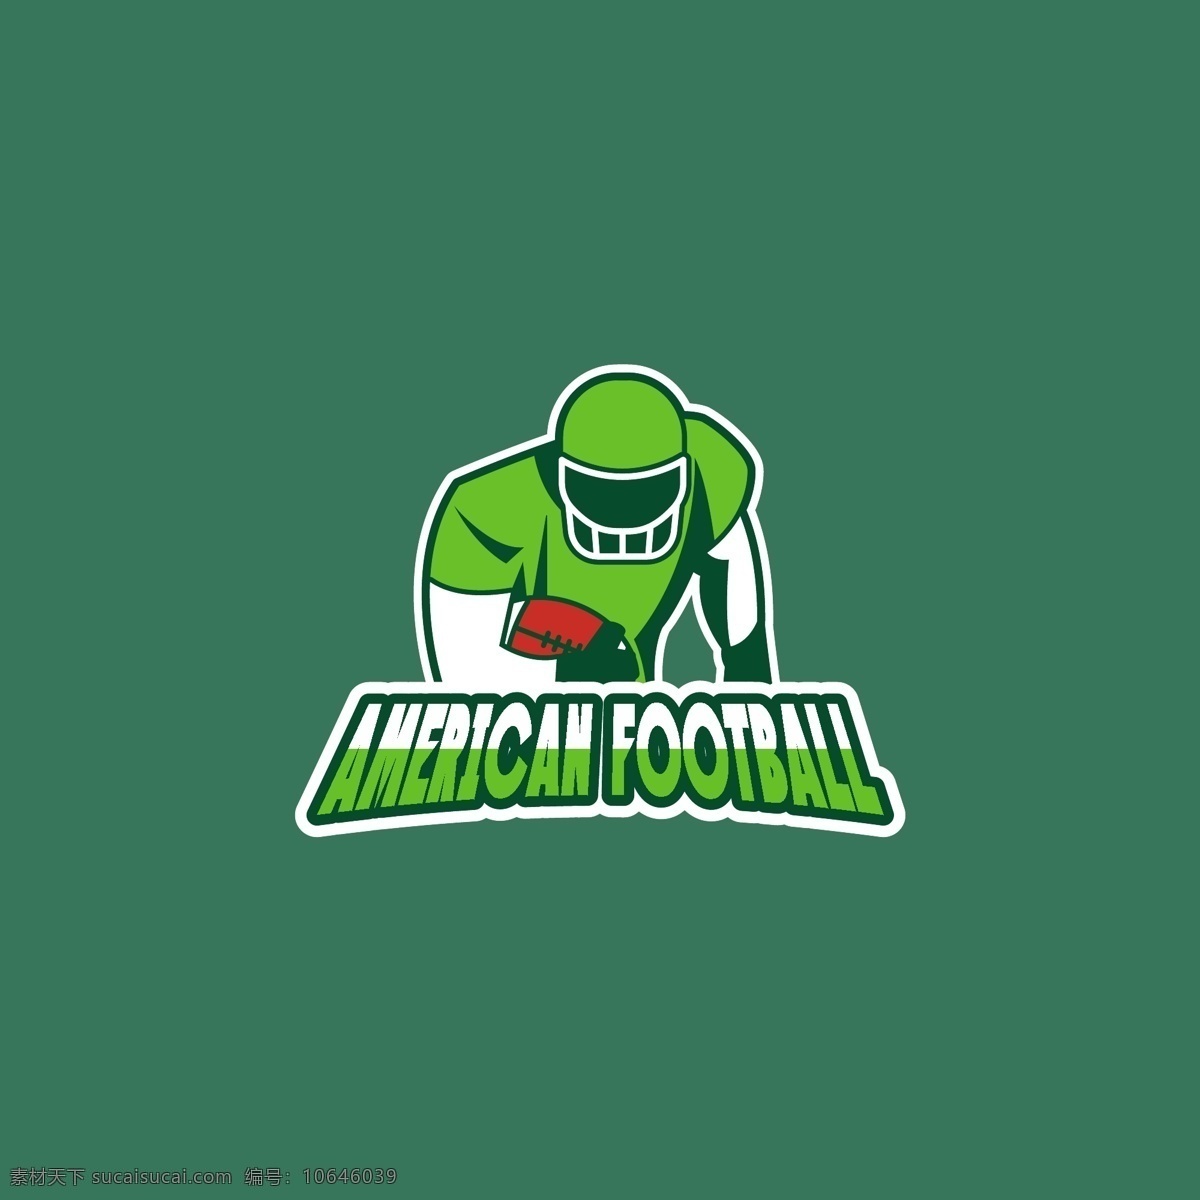 美式 橄榄球 标志 绿色背景 背景 业务 线 绿色 运动 标签 健身 足球 形状 健康 营销 体育 企业 公司 企业形象 品牌 现代 球